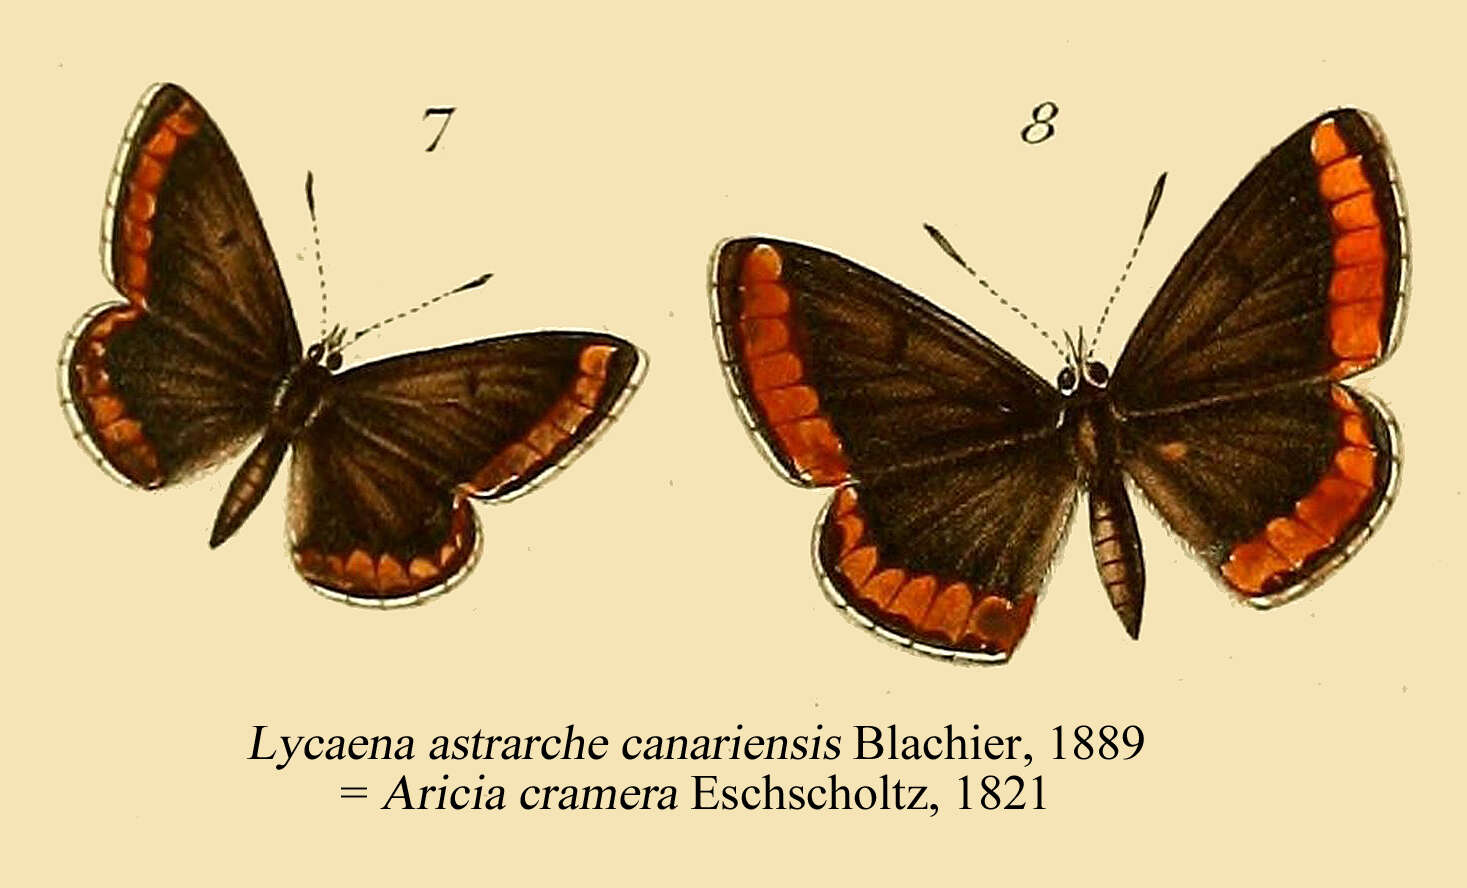 Image of Aricia cramera